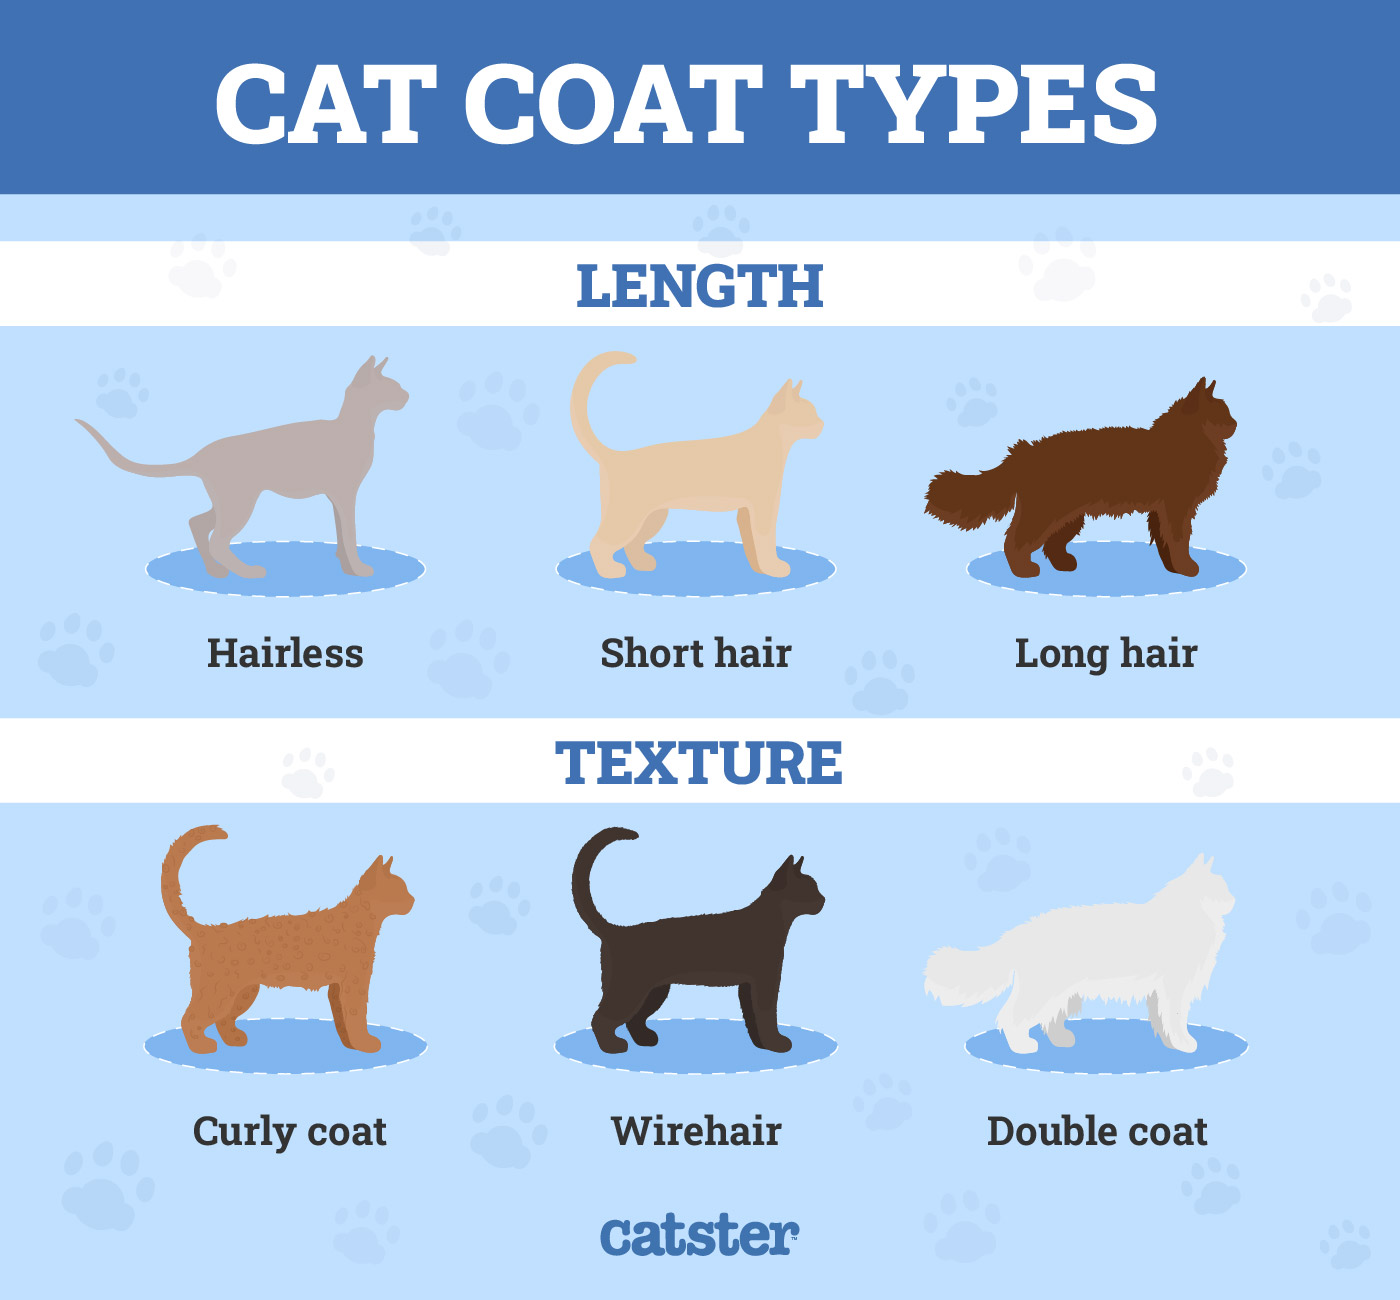 Cat coat types